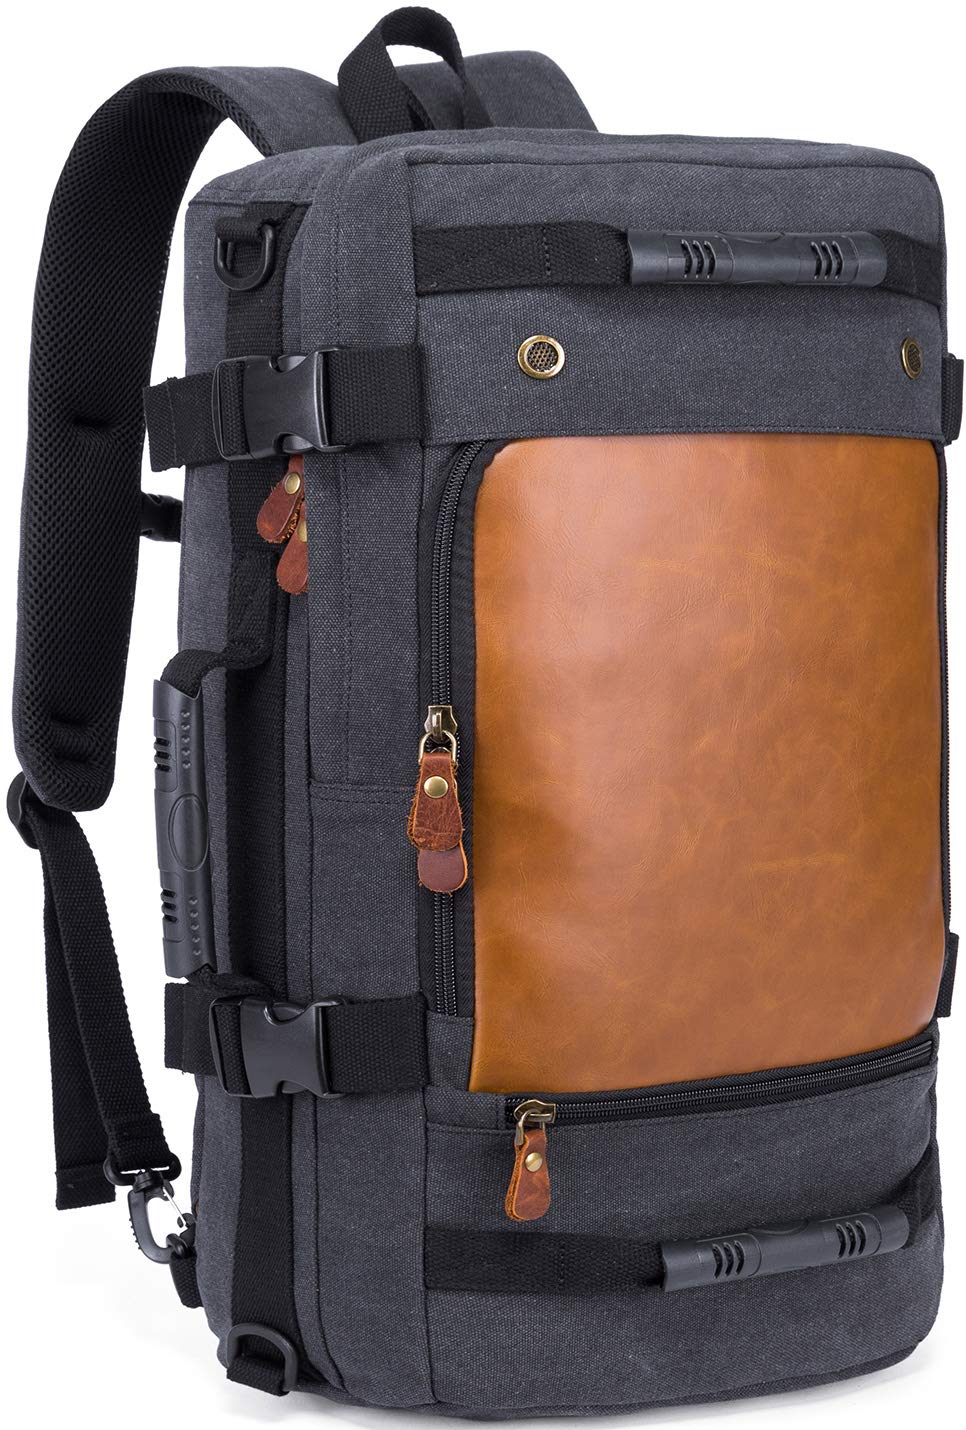 送料無料KAKA Backpack Fashion Unisex Travel Backpack Convertible Carry-On Bag Flight Approved Weekender Duffle Backpack C